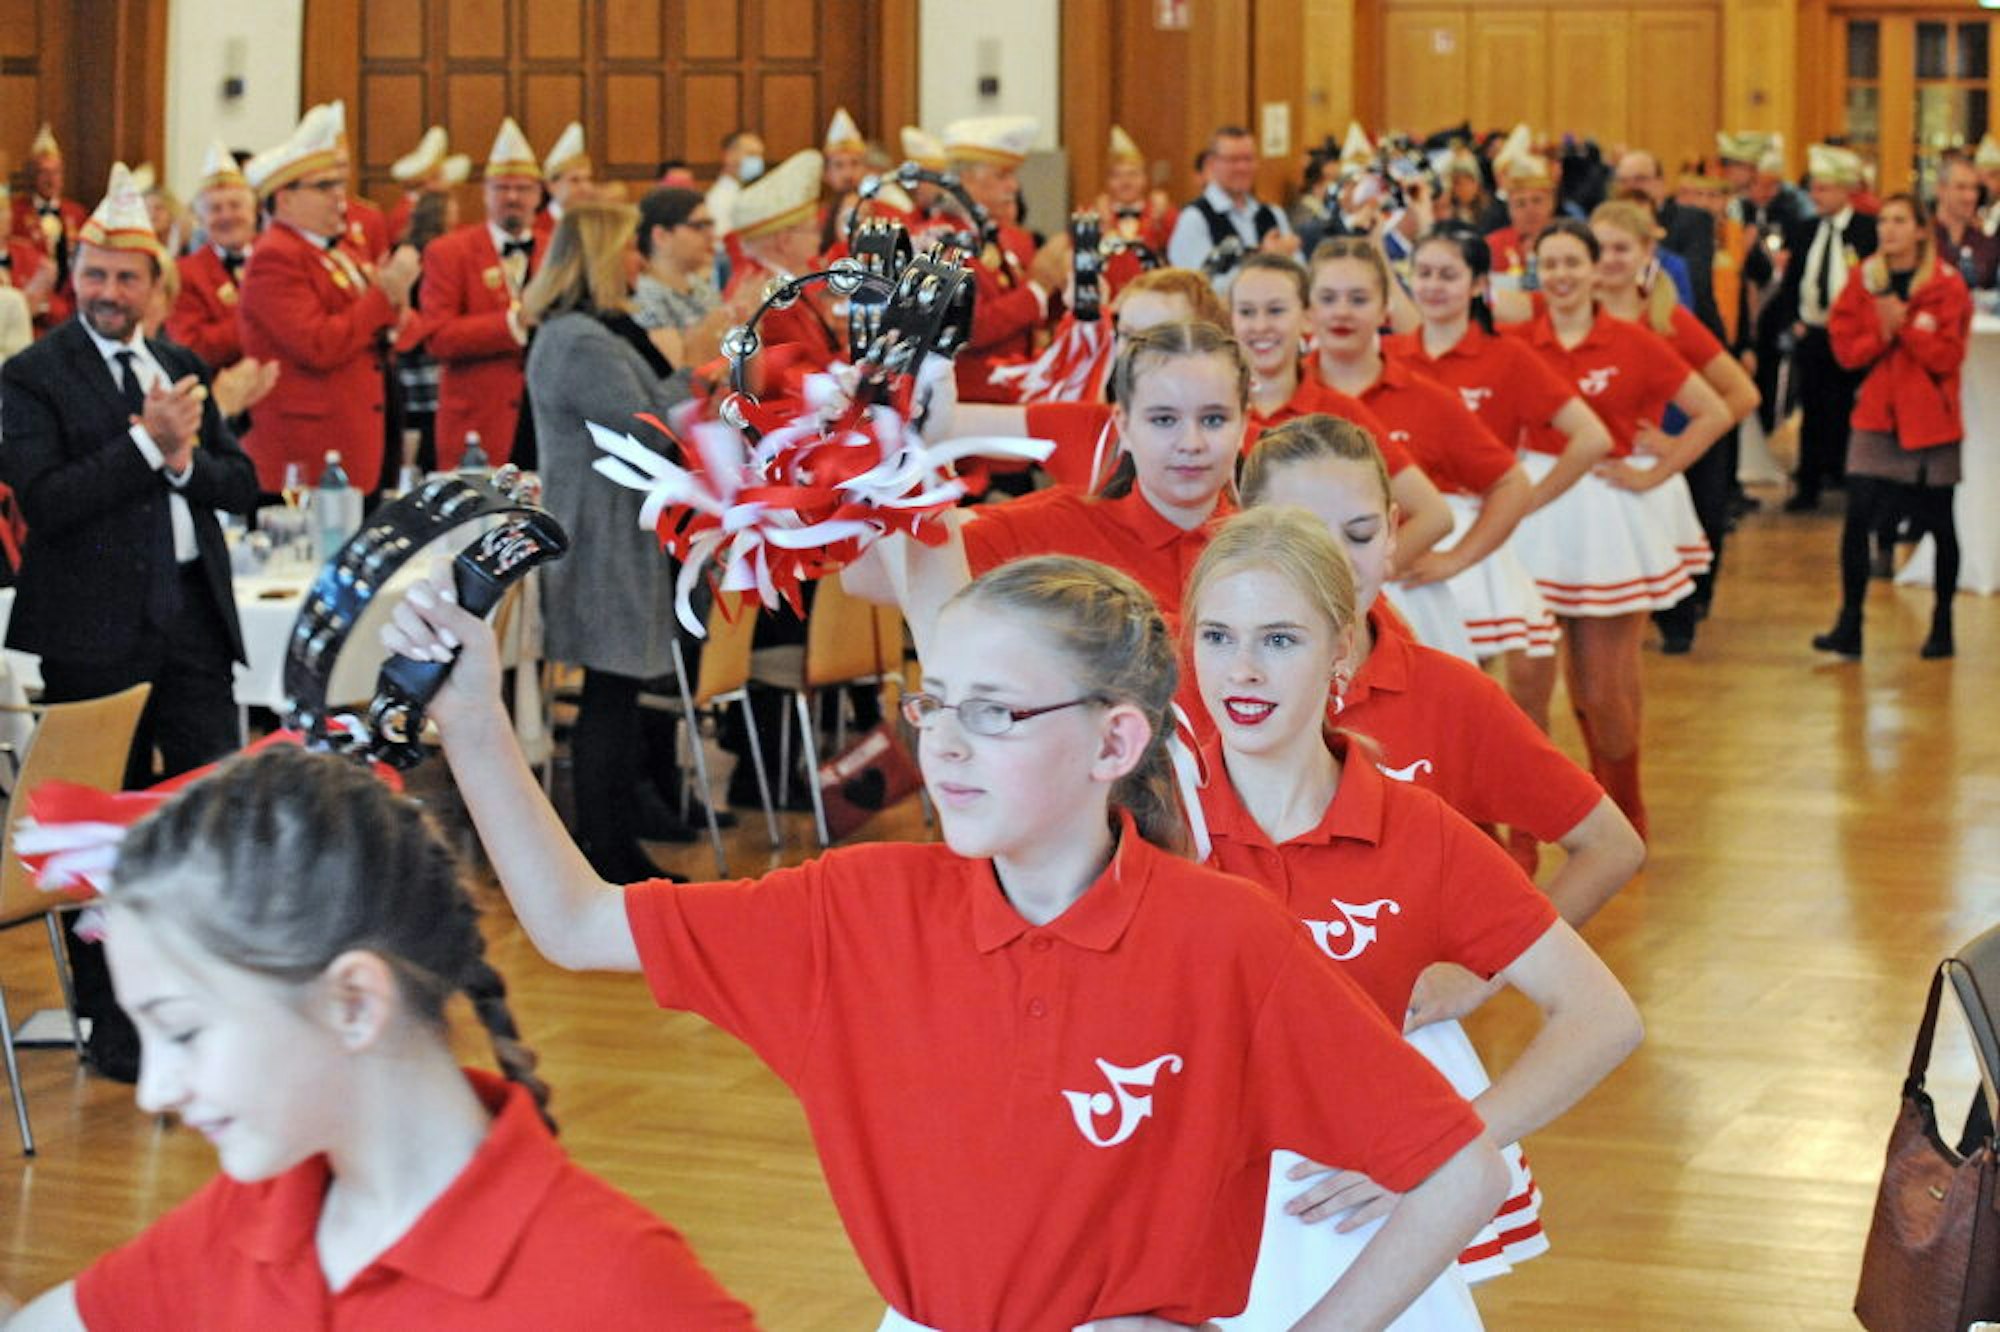 Endlich wieder ein Auftritt: Einmarsch der jungen Tänzerinnen der Roten Funken zur 111-Jahre-Jubiläumsfeier.